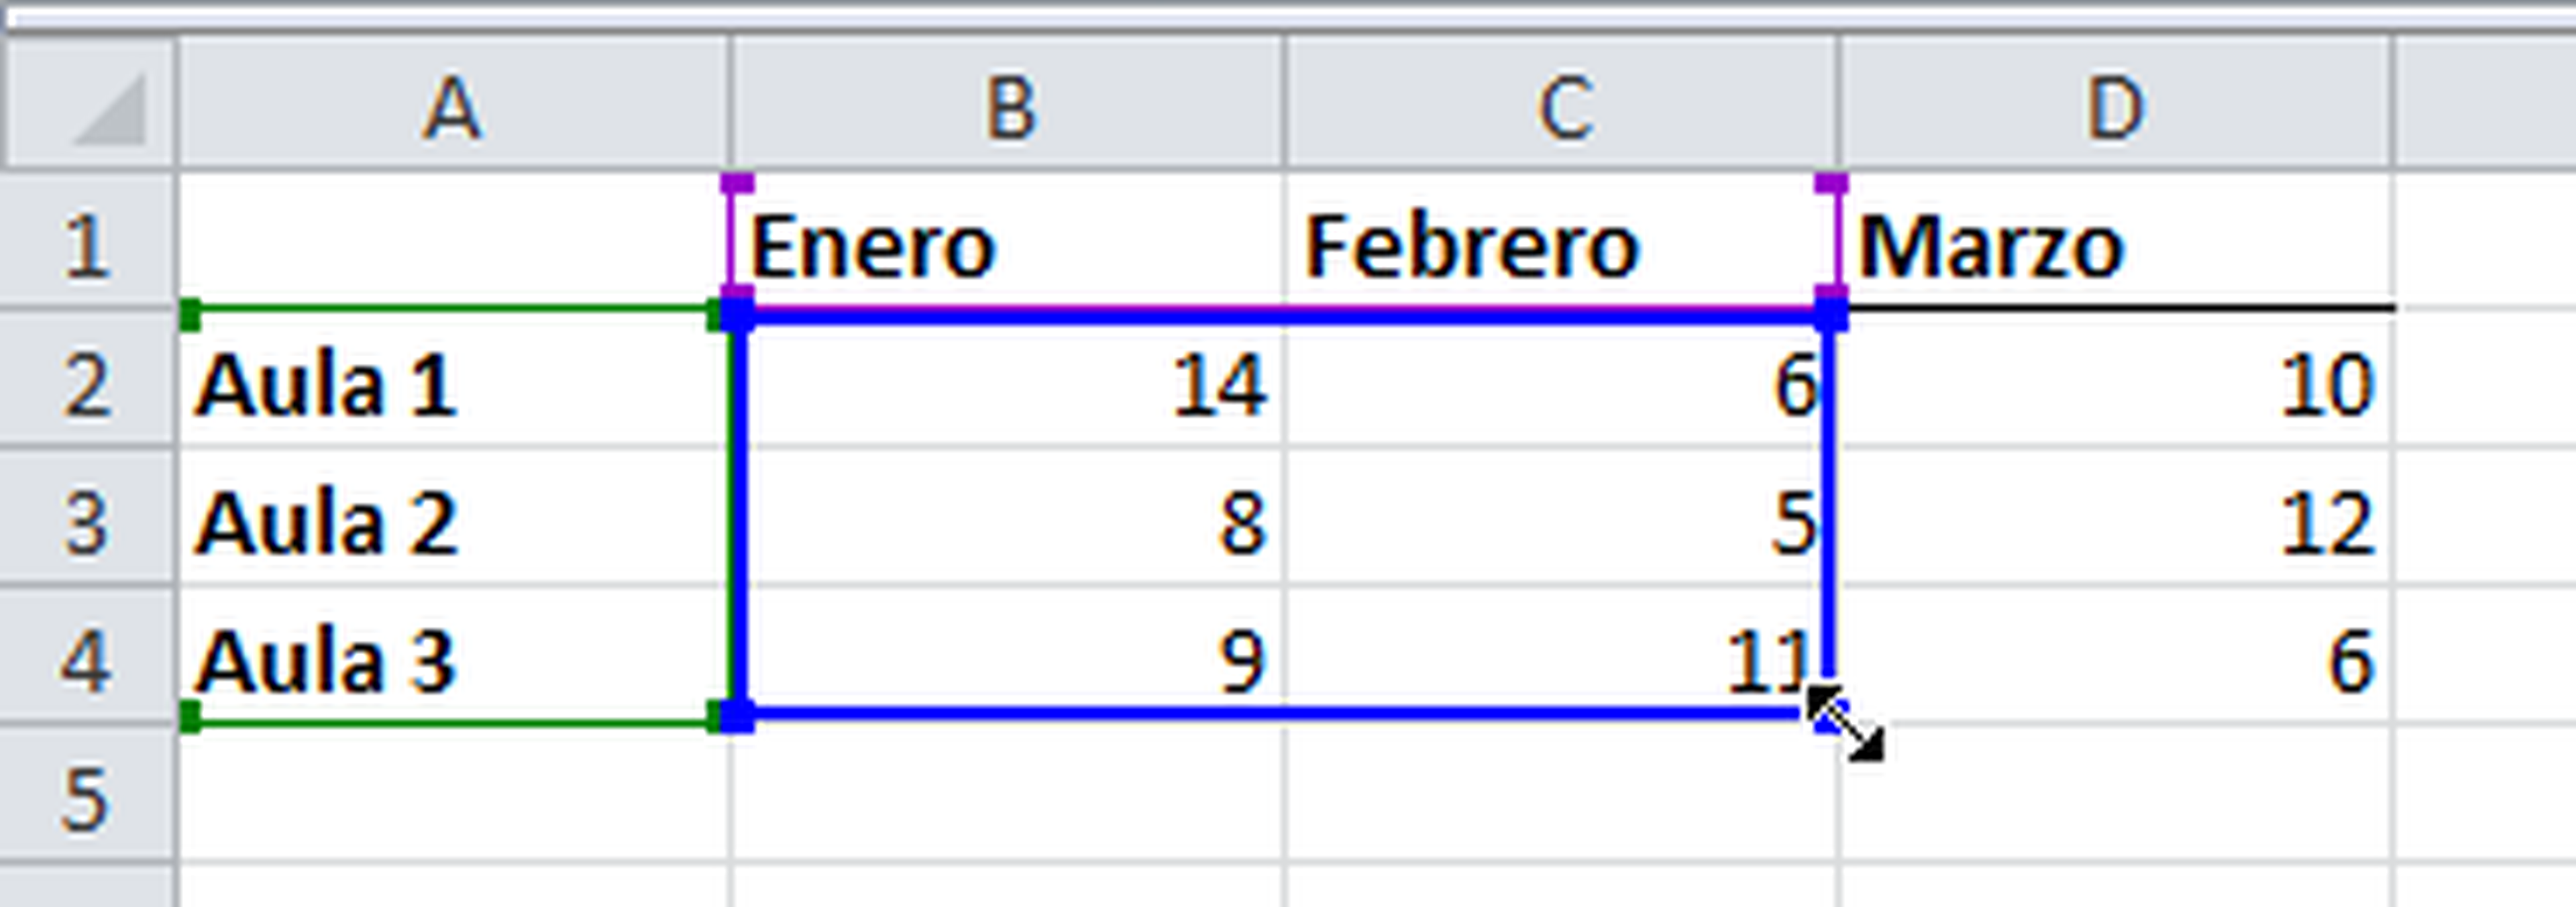 Cómo añadir nuevas series en un gráfico de Excel